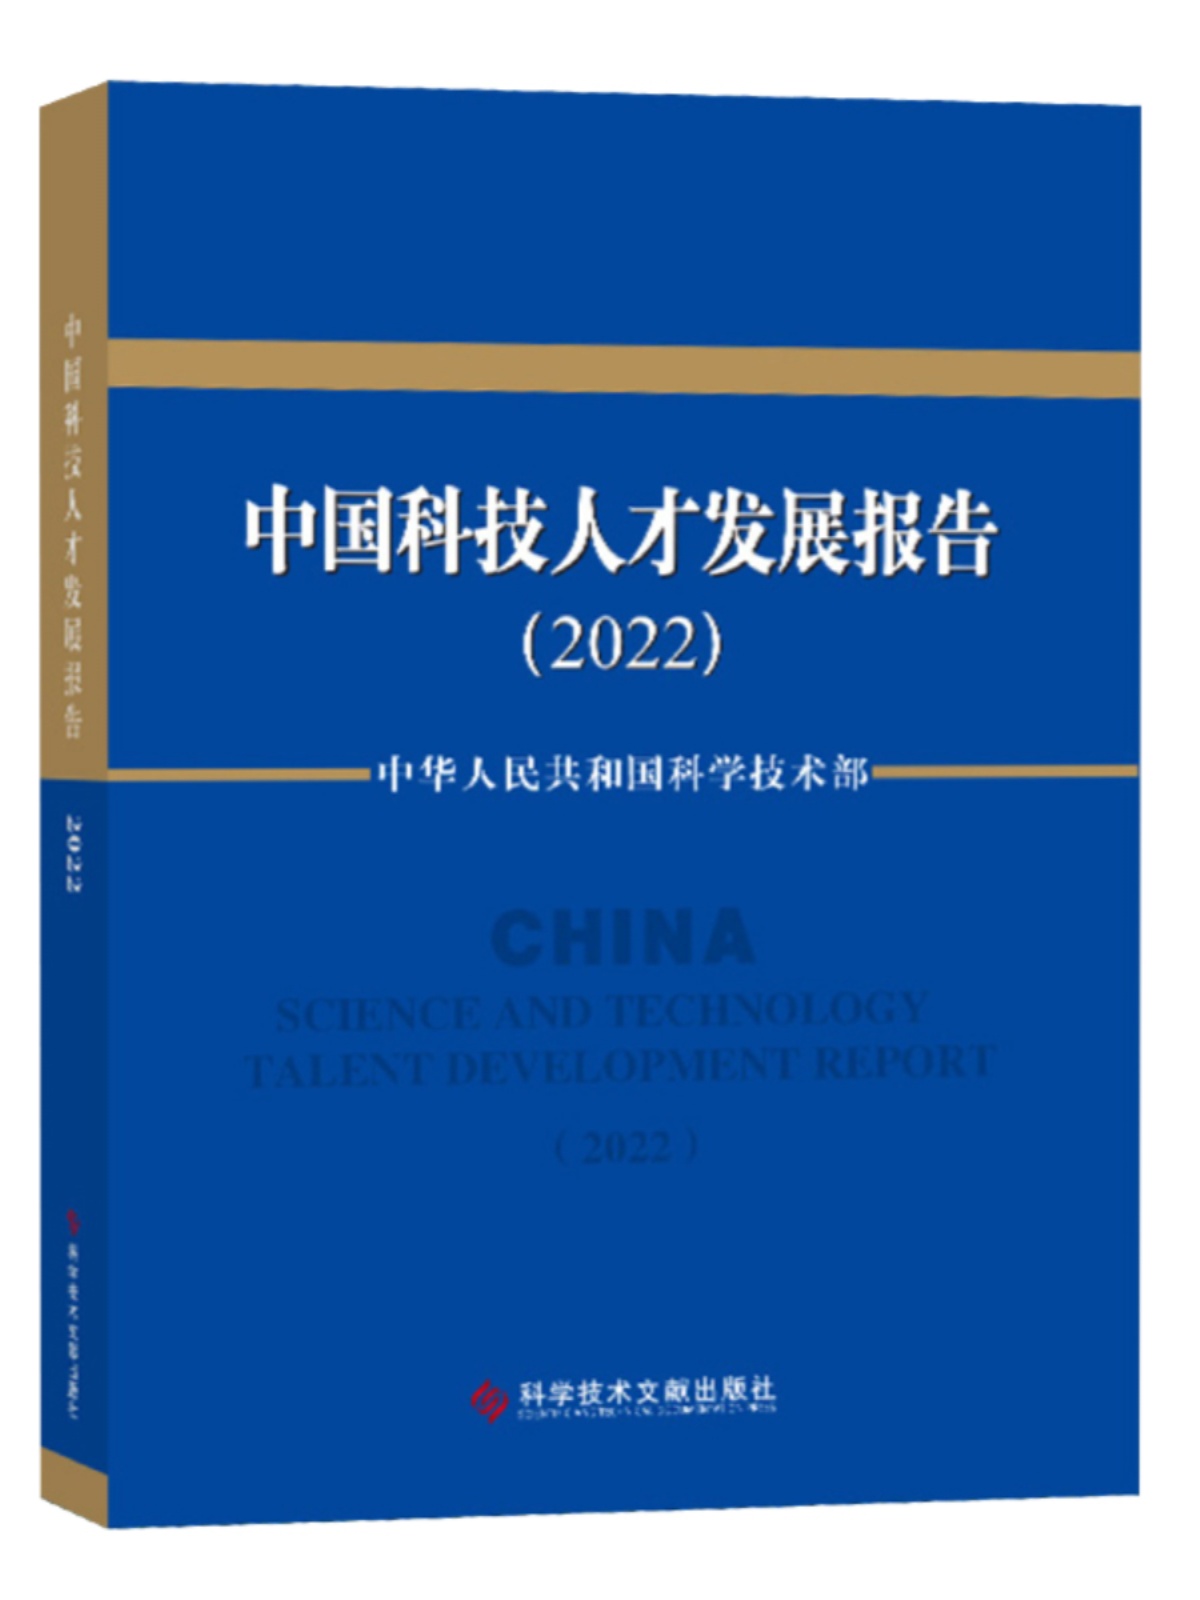 中国科技人才发展报告2022 技术人才发展战略研究报告书籍 科学技术文献出版社